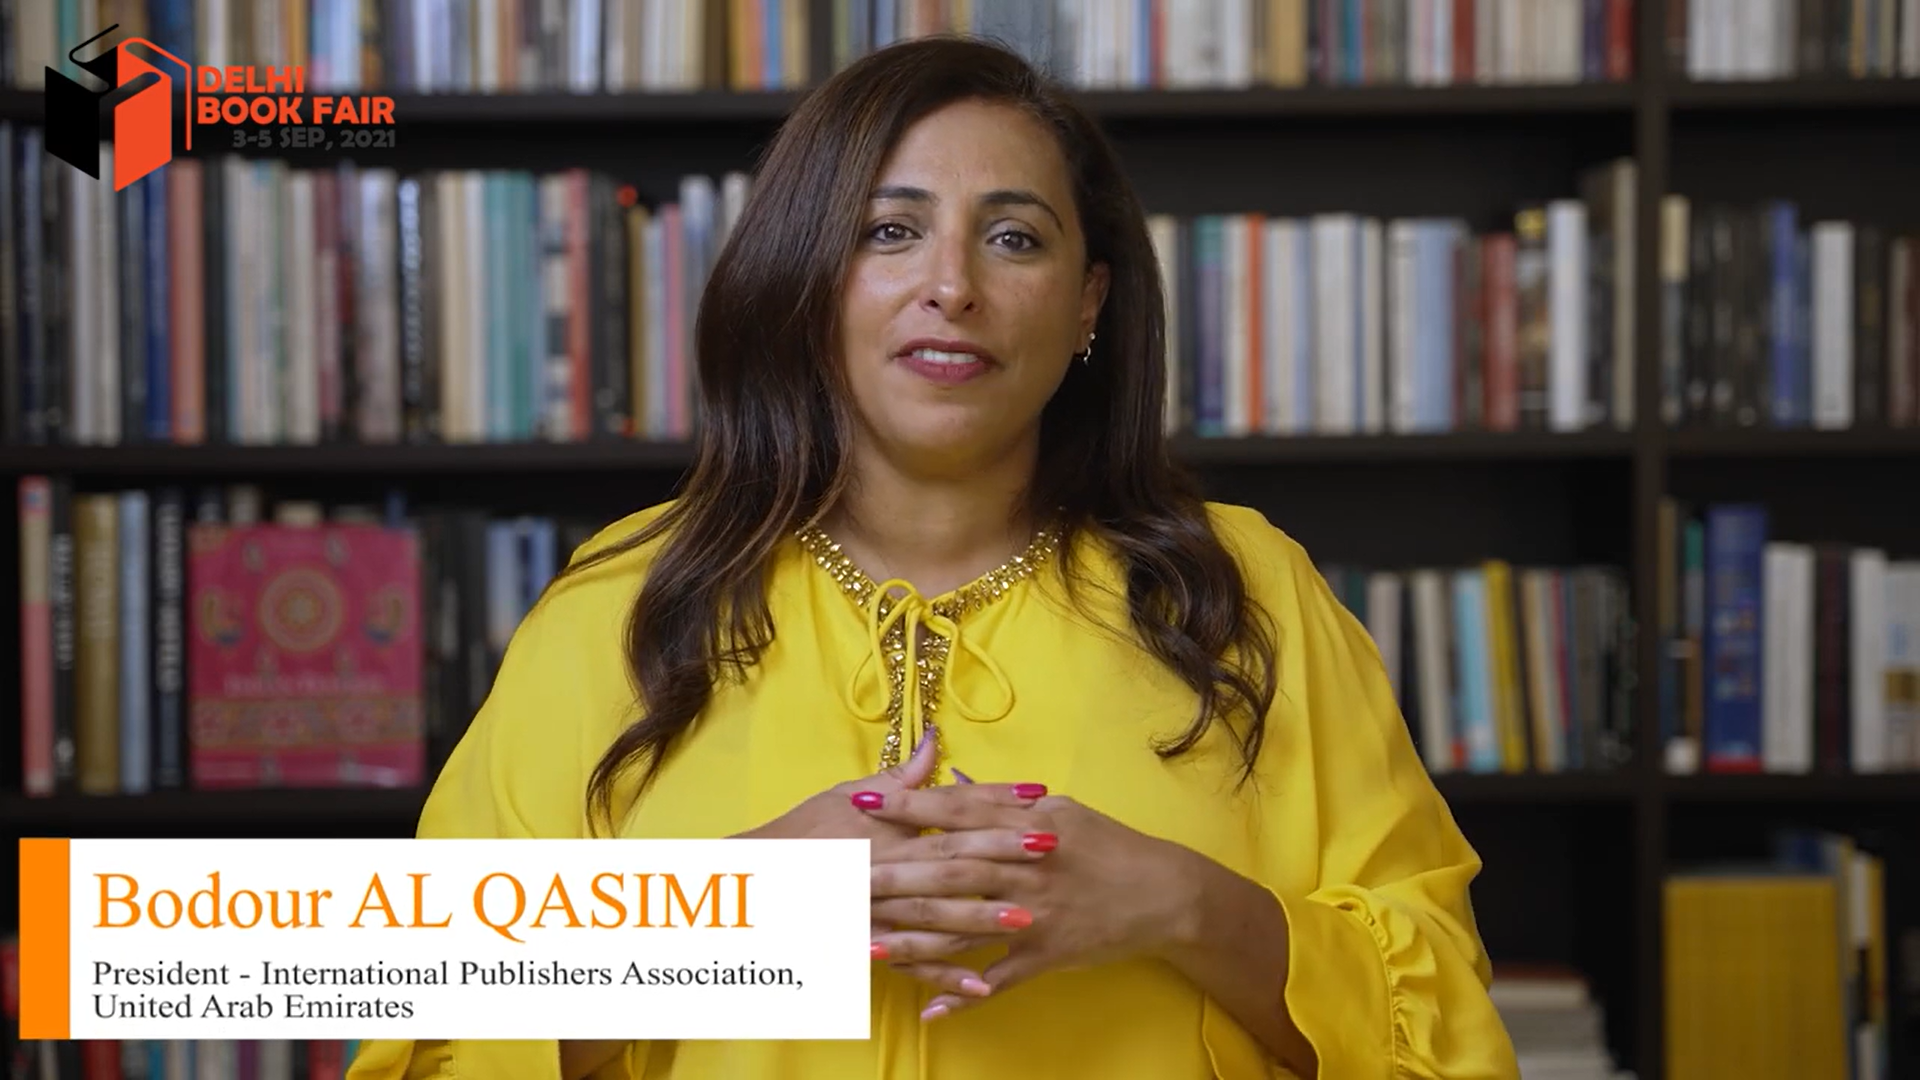 Delhi Book Fair 2021 | Bodour AL QASIMI President - International Publishers Association, UAE